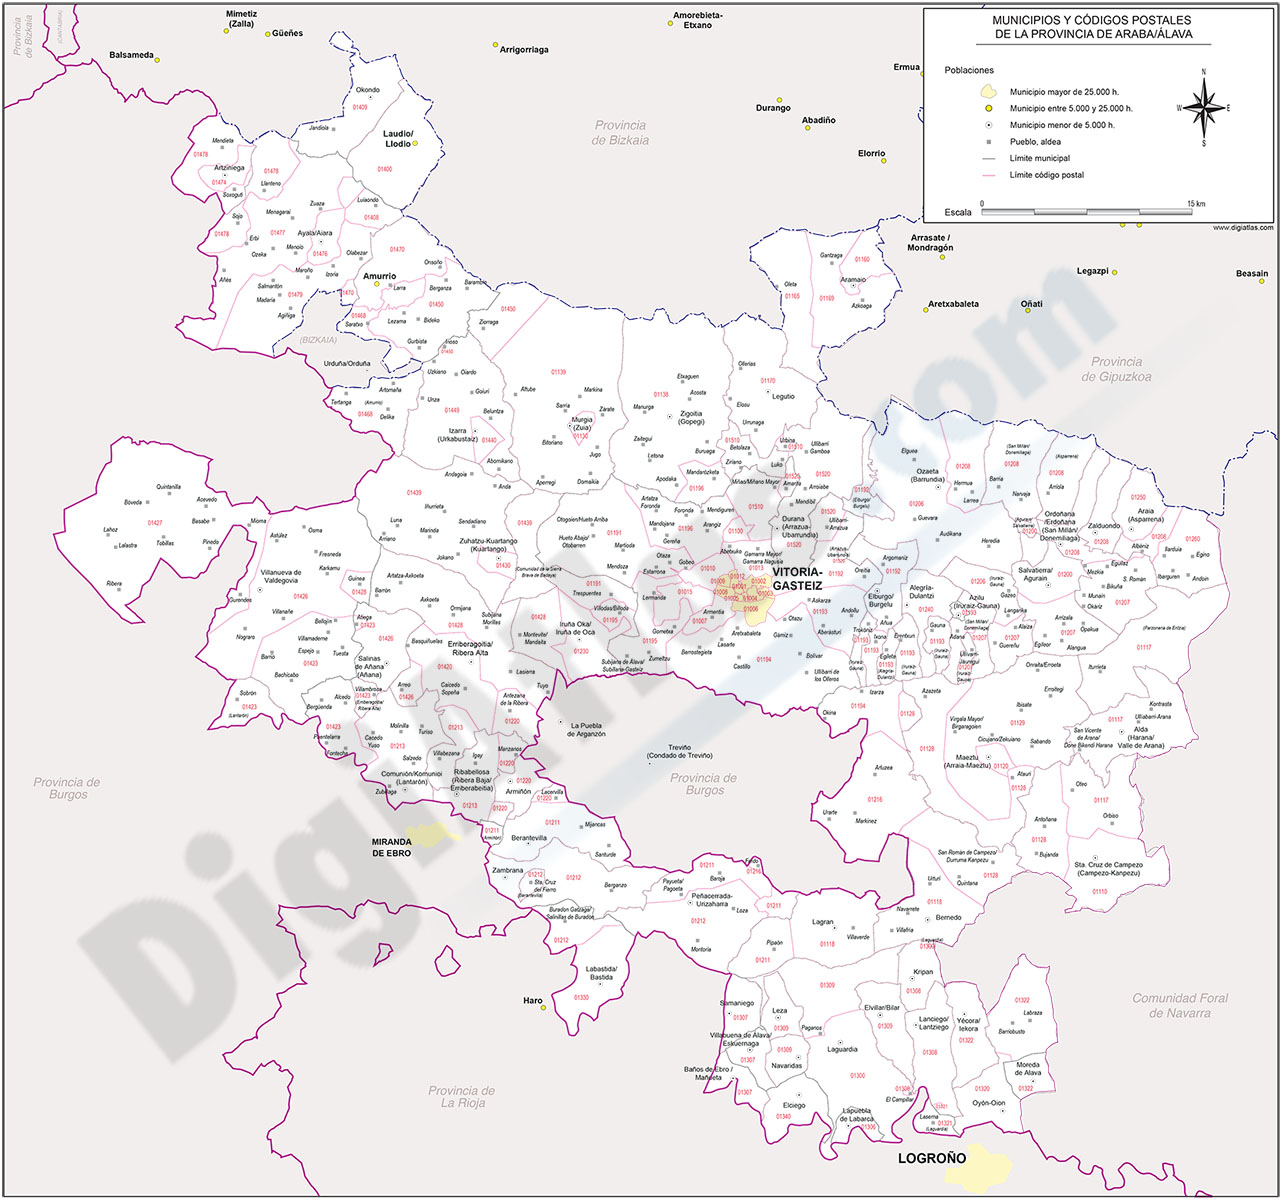 Alava (Araba) - mapa provincial con municipios y Códigos Postales